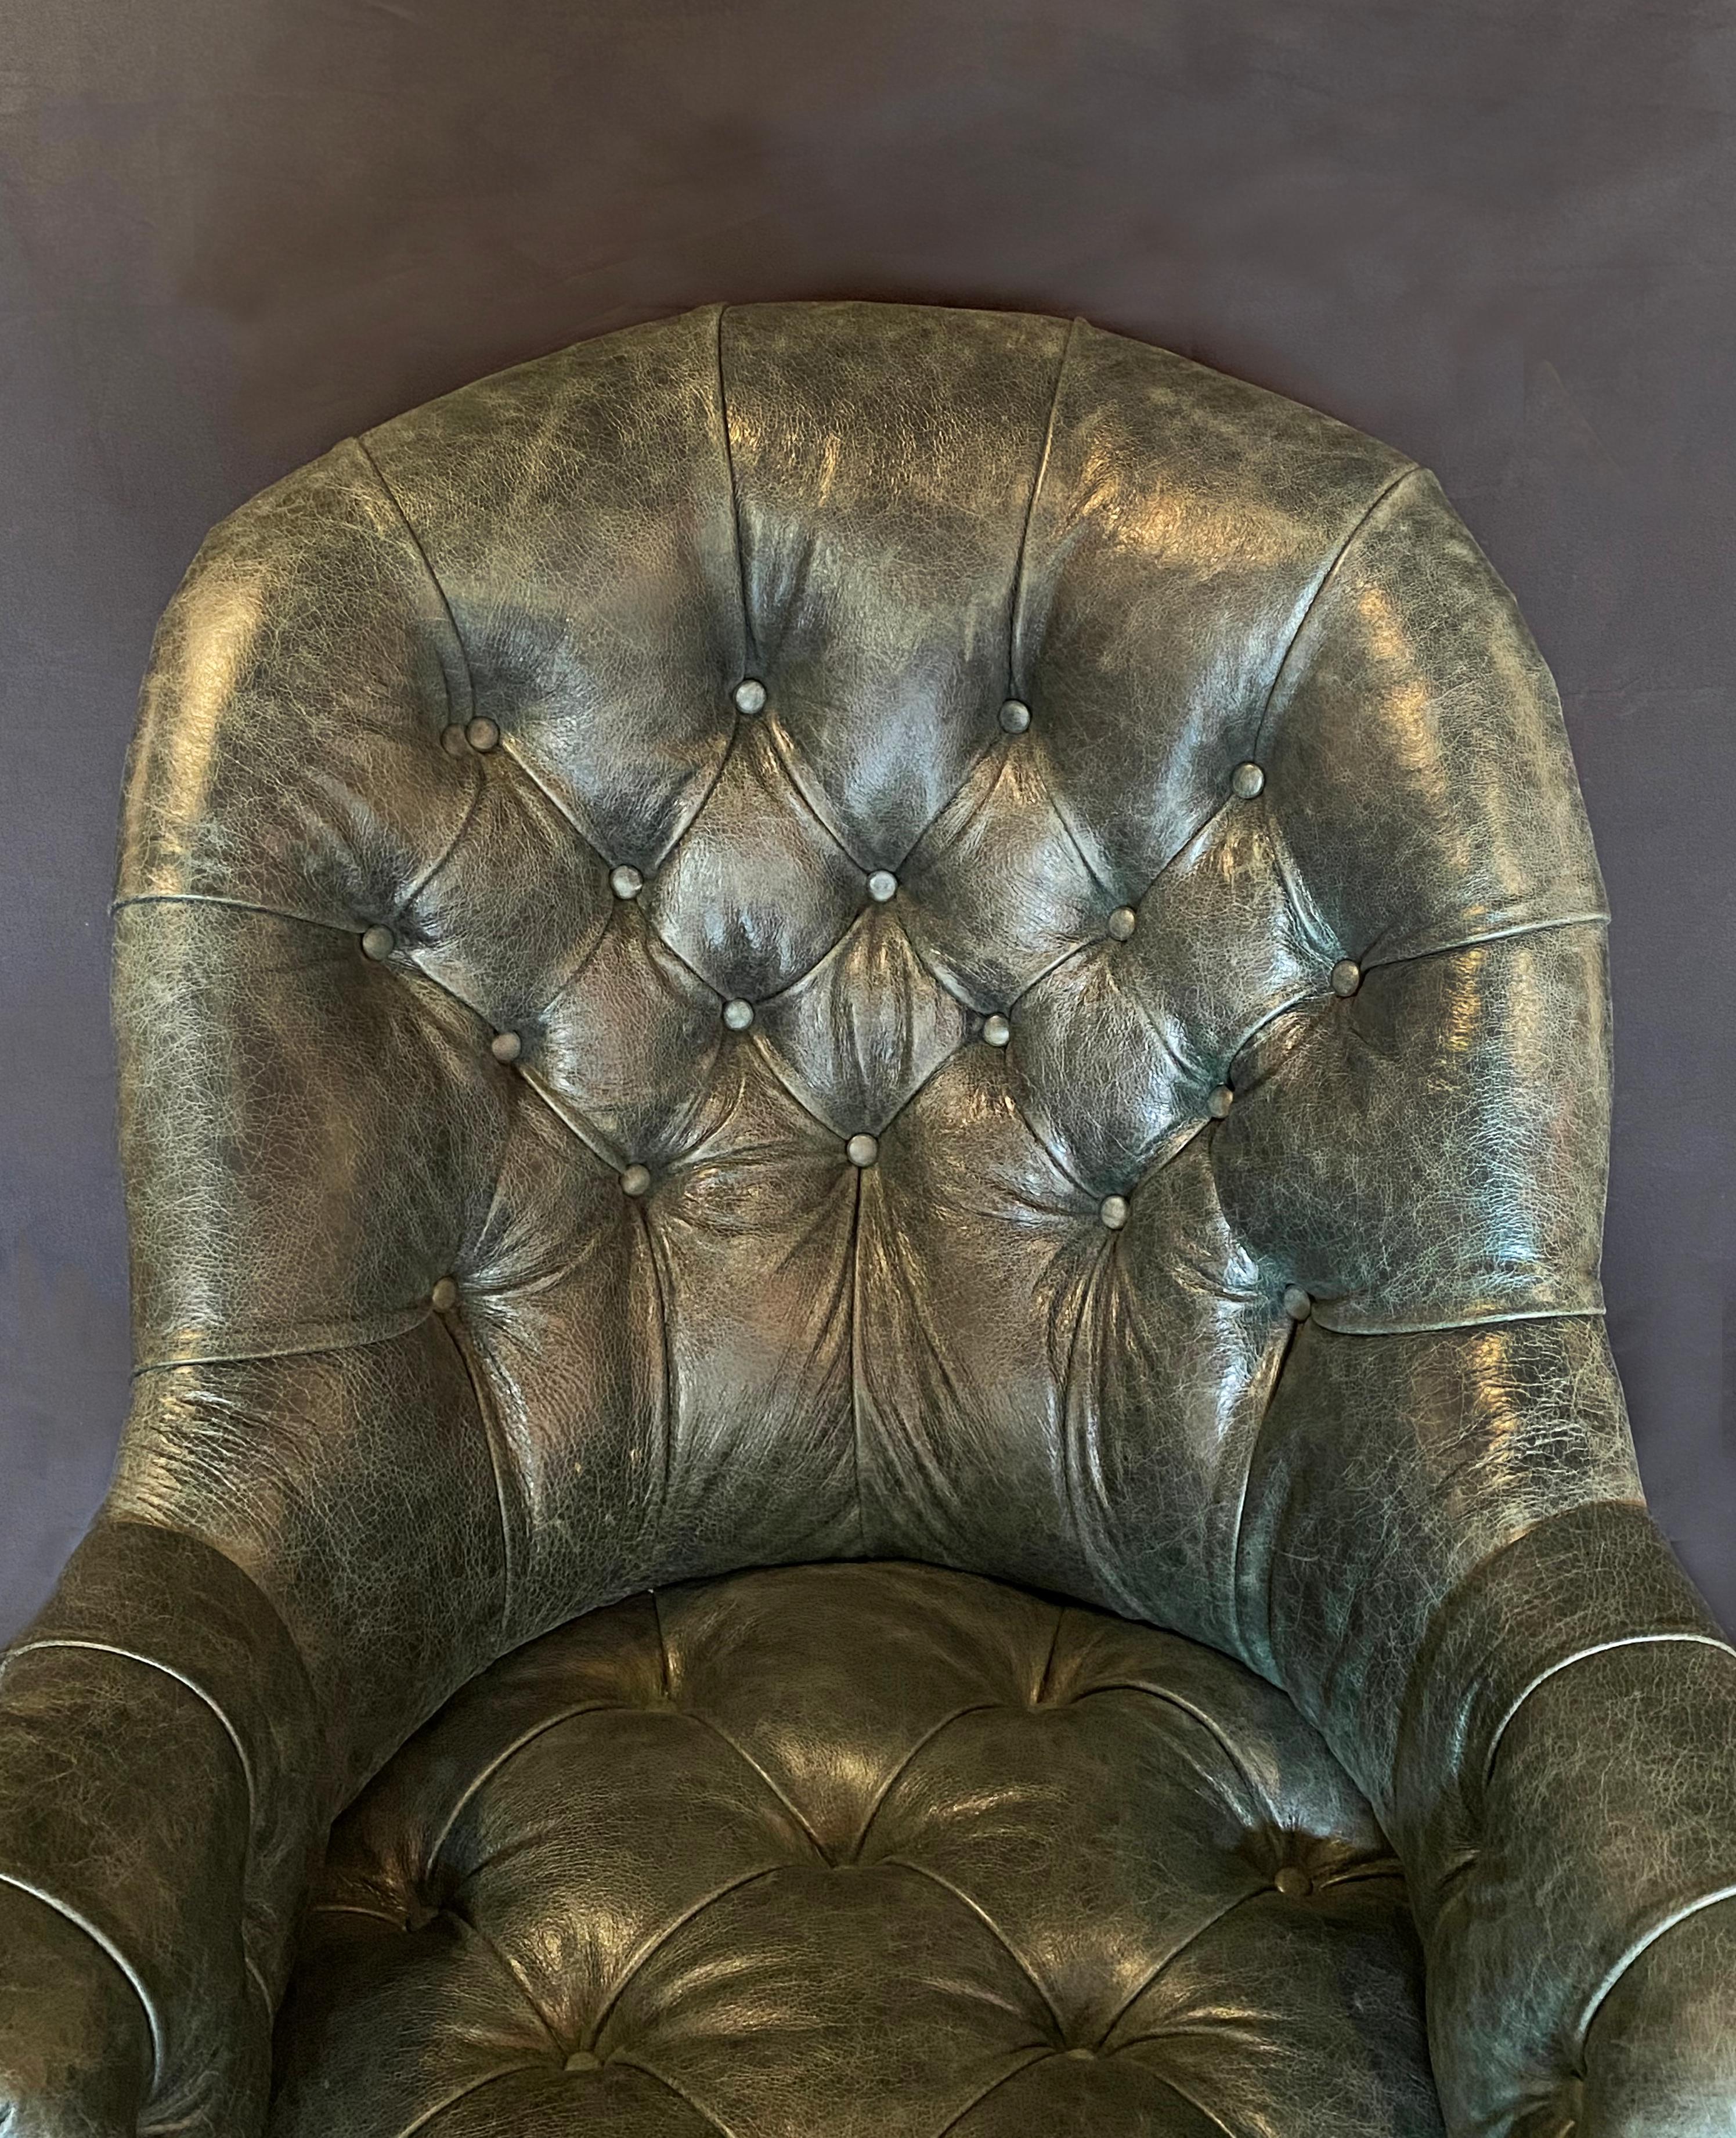 Un fauteuil de bibliothèque Gillows of Lancaster du 19ème siècle en noyer et cuir, avec un état général et une couleur exceptionnels. Le cuir vert foncé boutonné est en parfait état et luxueux. Les bras en noyer sont sculptés de volutes et de